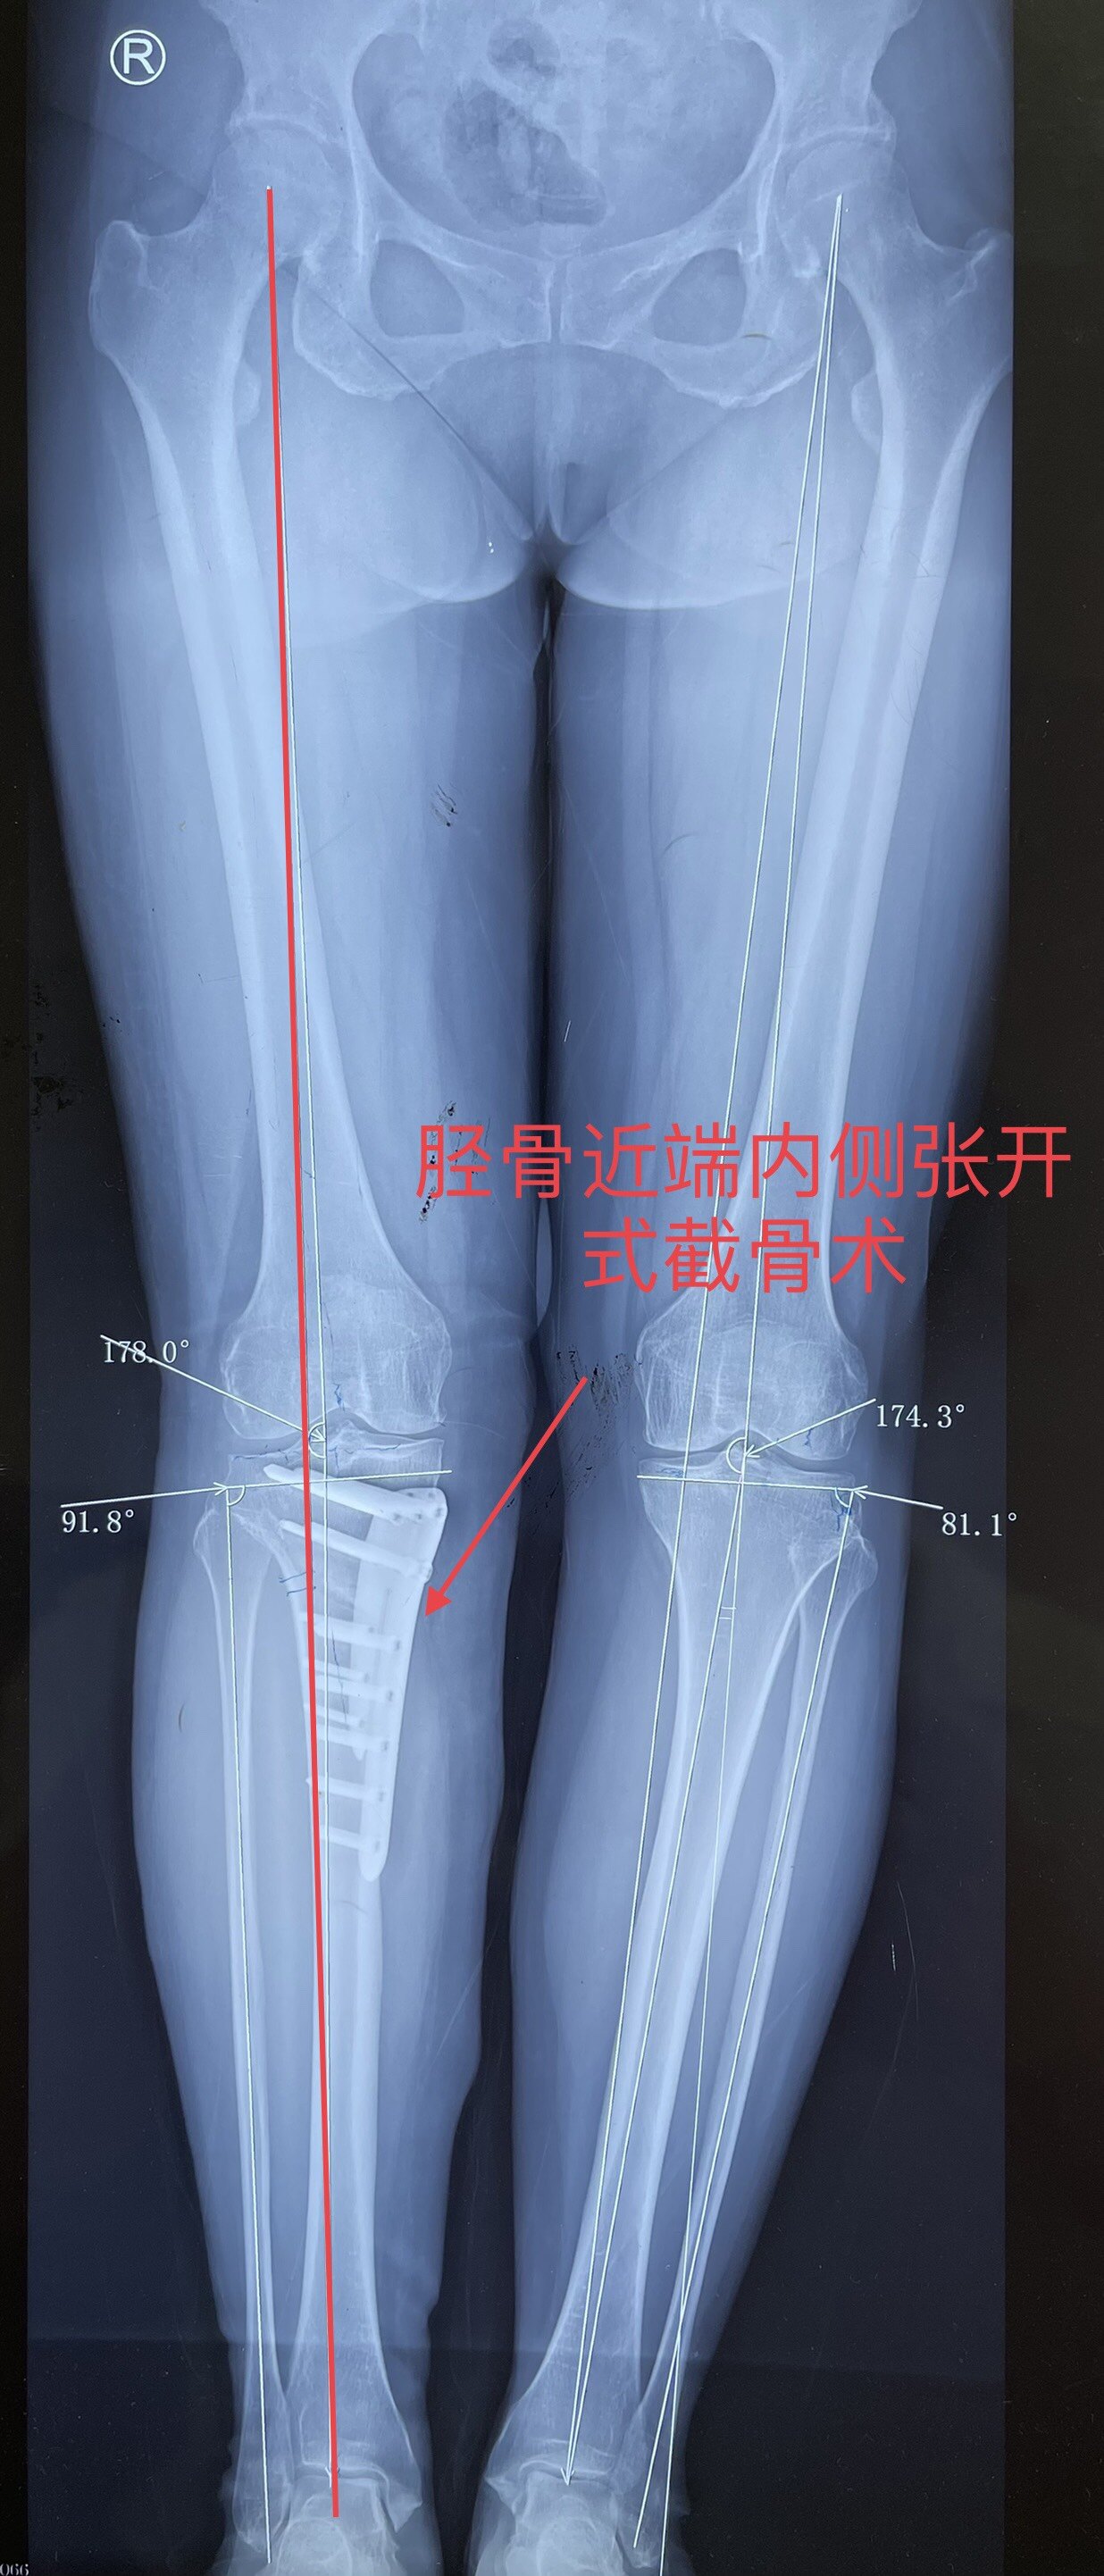 保膝治疗(截骨术),右膝胫骨近端内侧张开式截骨术后,改善下肢力线